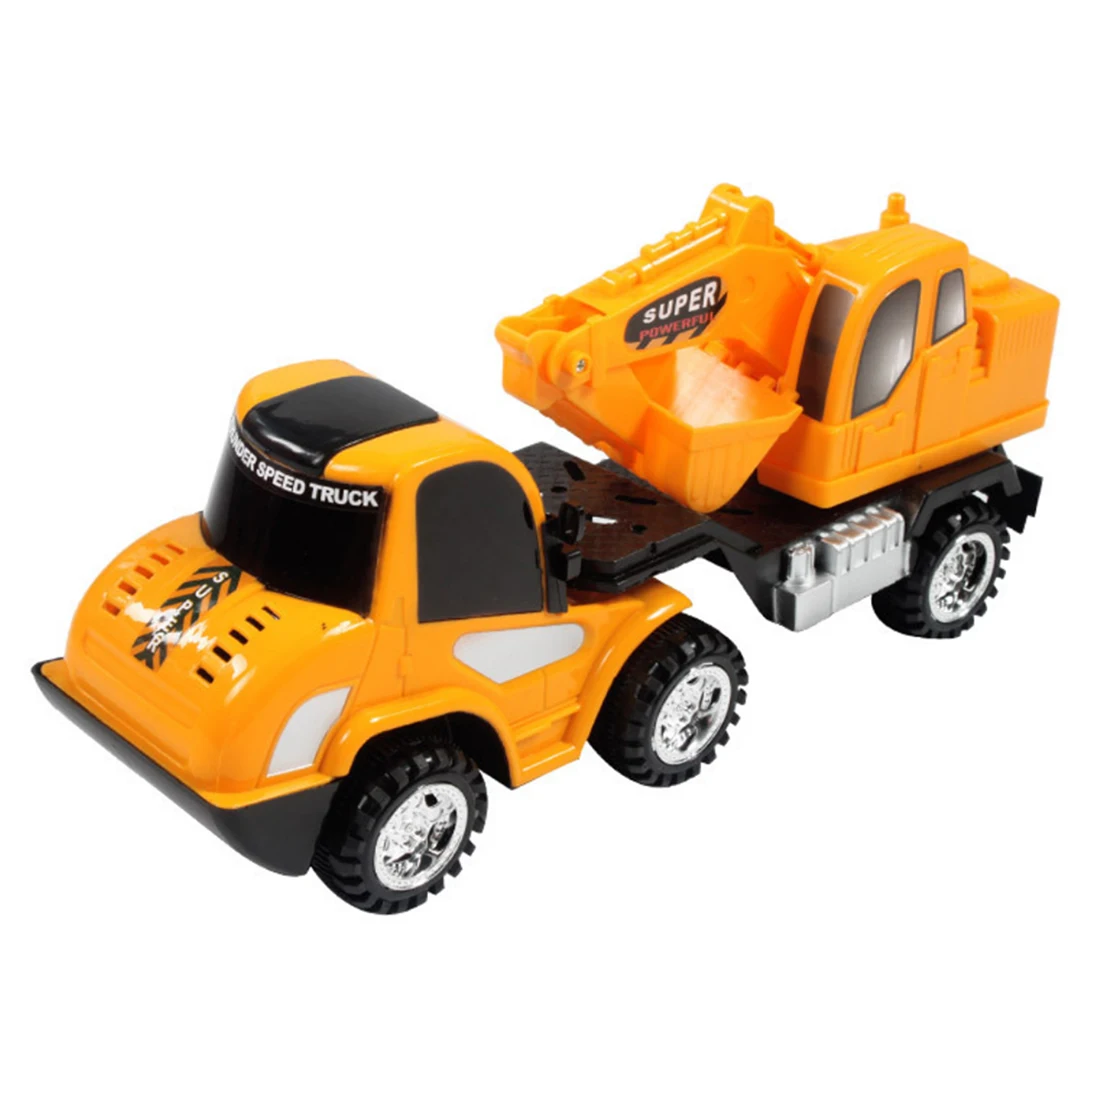 Моделирование инерции Инженерная модель автомобиля строительные транспортные средства игрушки для детей Детские экскаватор Транспортная Тележка пляж песок играть игрушки